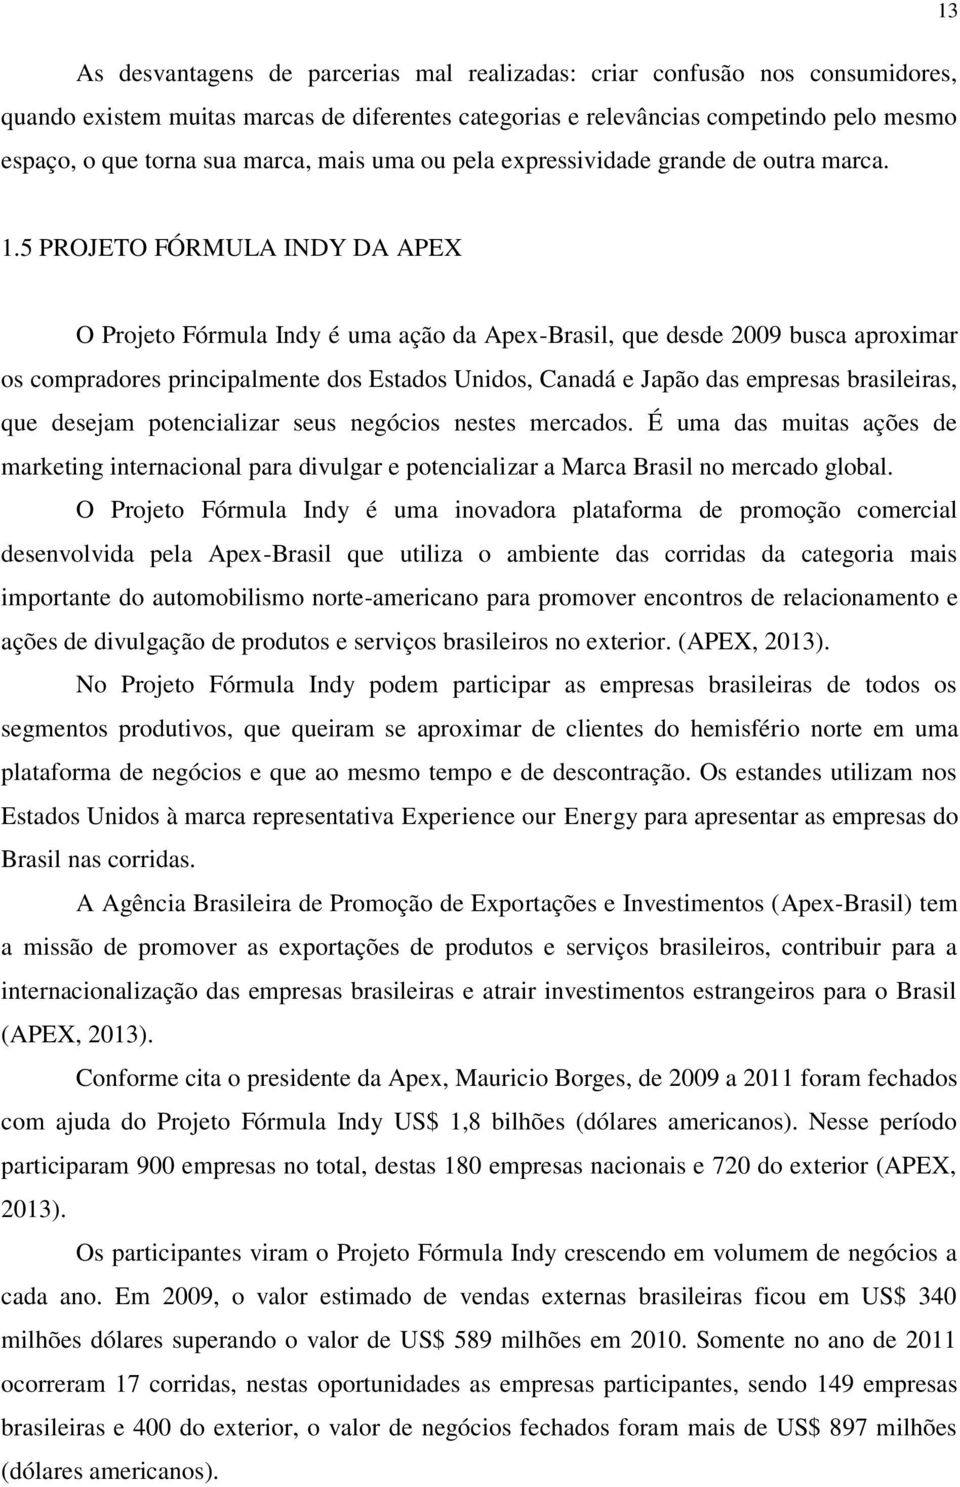 5 PROJETO FÓRMULA INDY DA APEX O Projeto Fórmula Indy é uma ação da Apex-Brasil, que desde 2009 busca aproximar os compradores principalmente dos Estados Unidos, Canadá e Japão das empresas